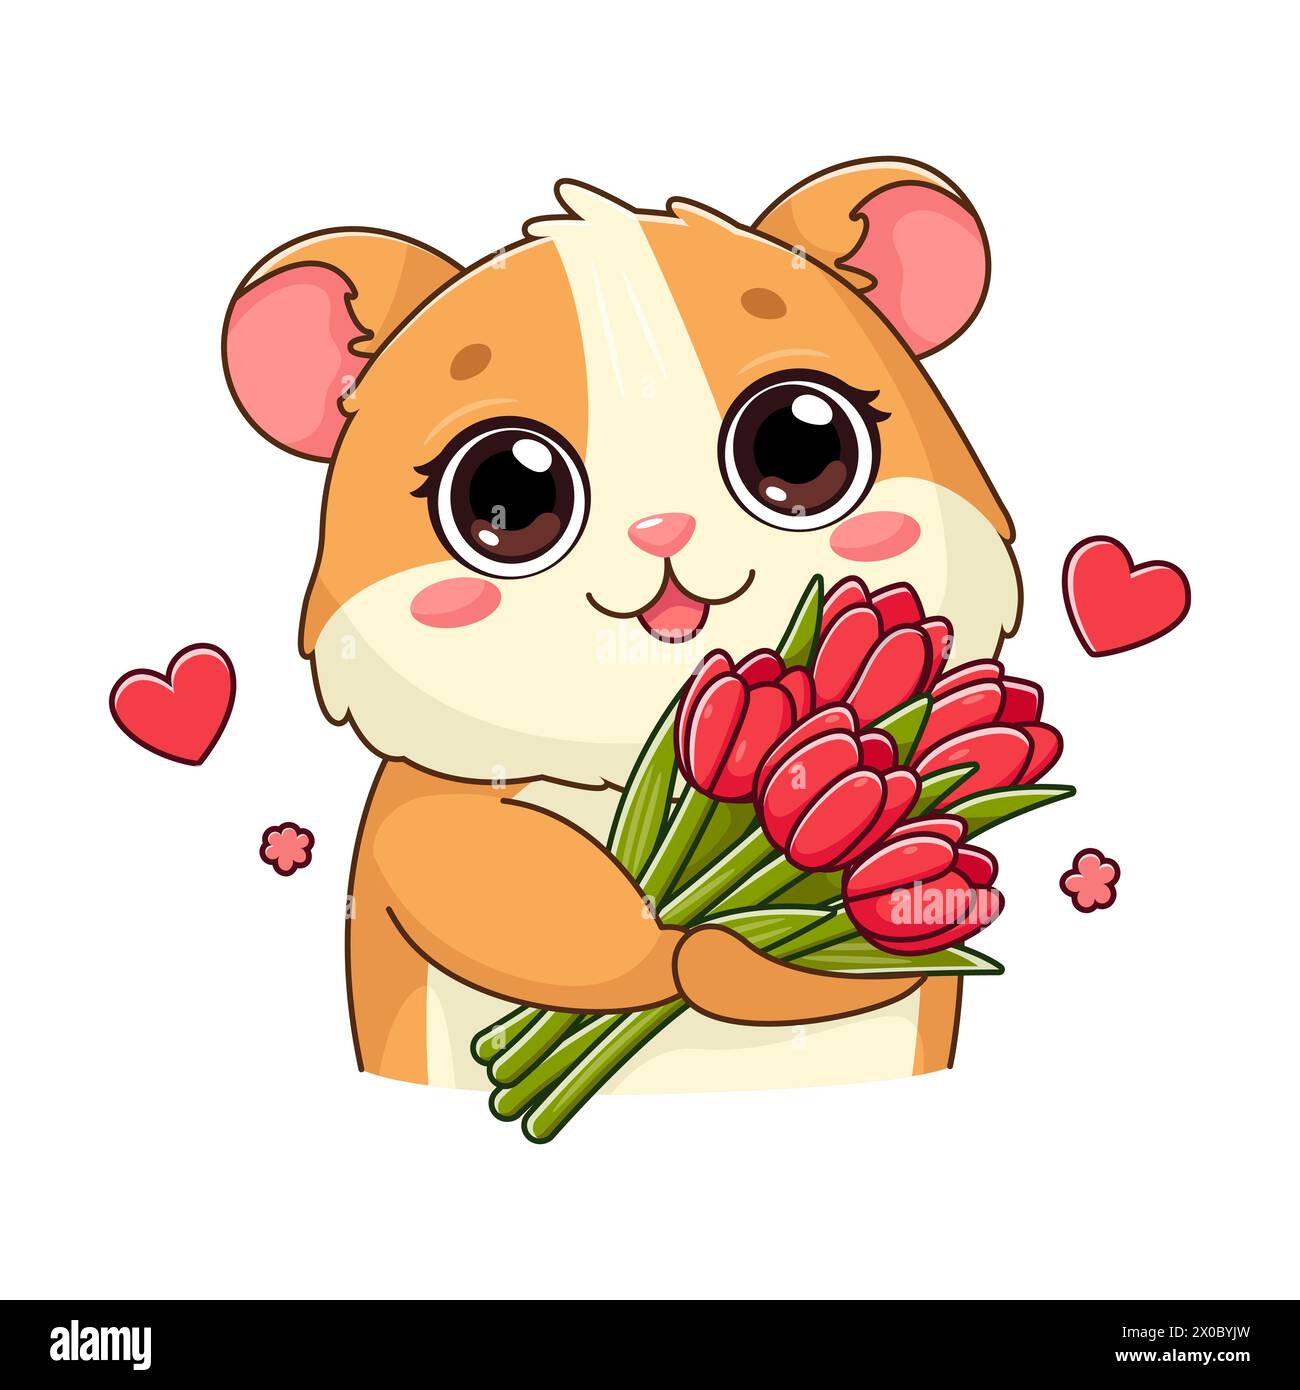 Aufkleber mit süßem Hamster, der einen Strauß aus roten Tulpen hält. Ein lächelnder, entzückender Charakter im Cartoon-Stil. Sommer, Frühlingsblumen. Vektorabbildung isol Stock Vektor